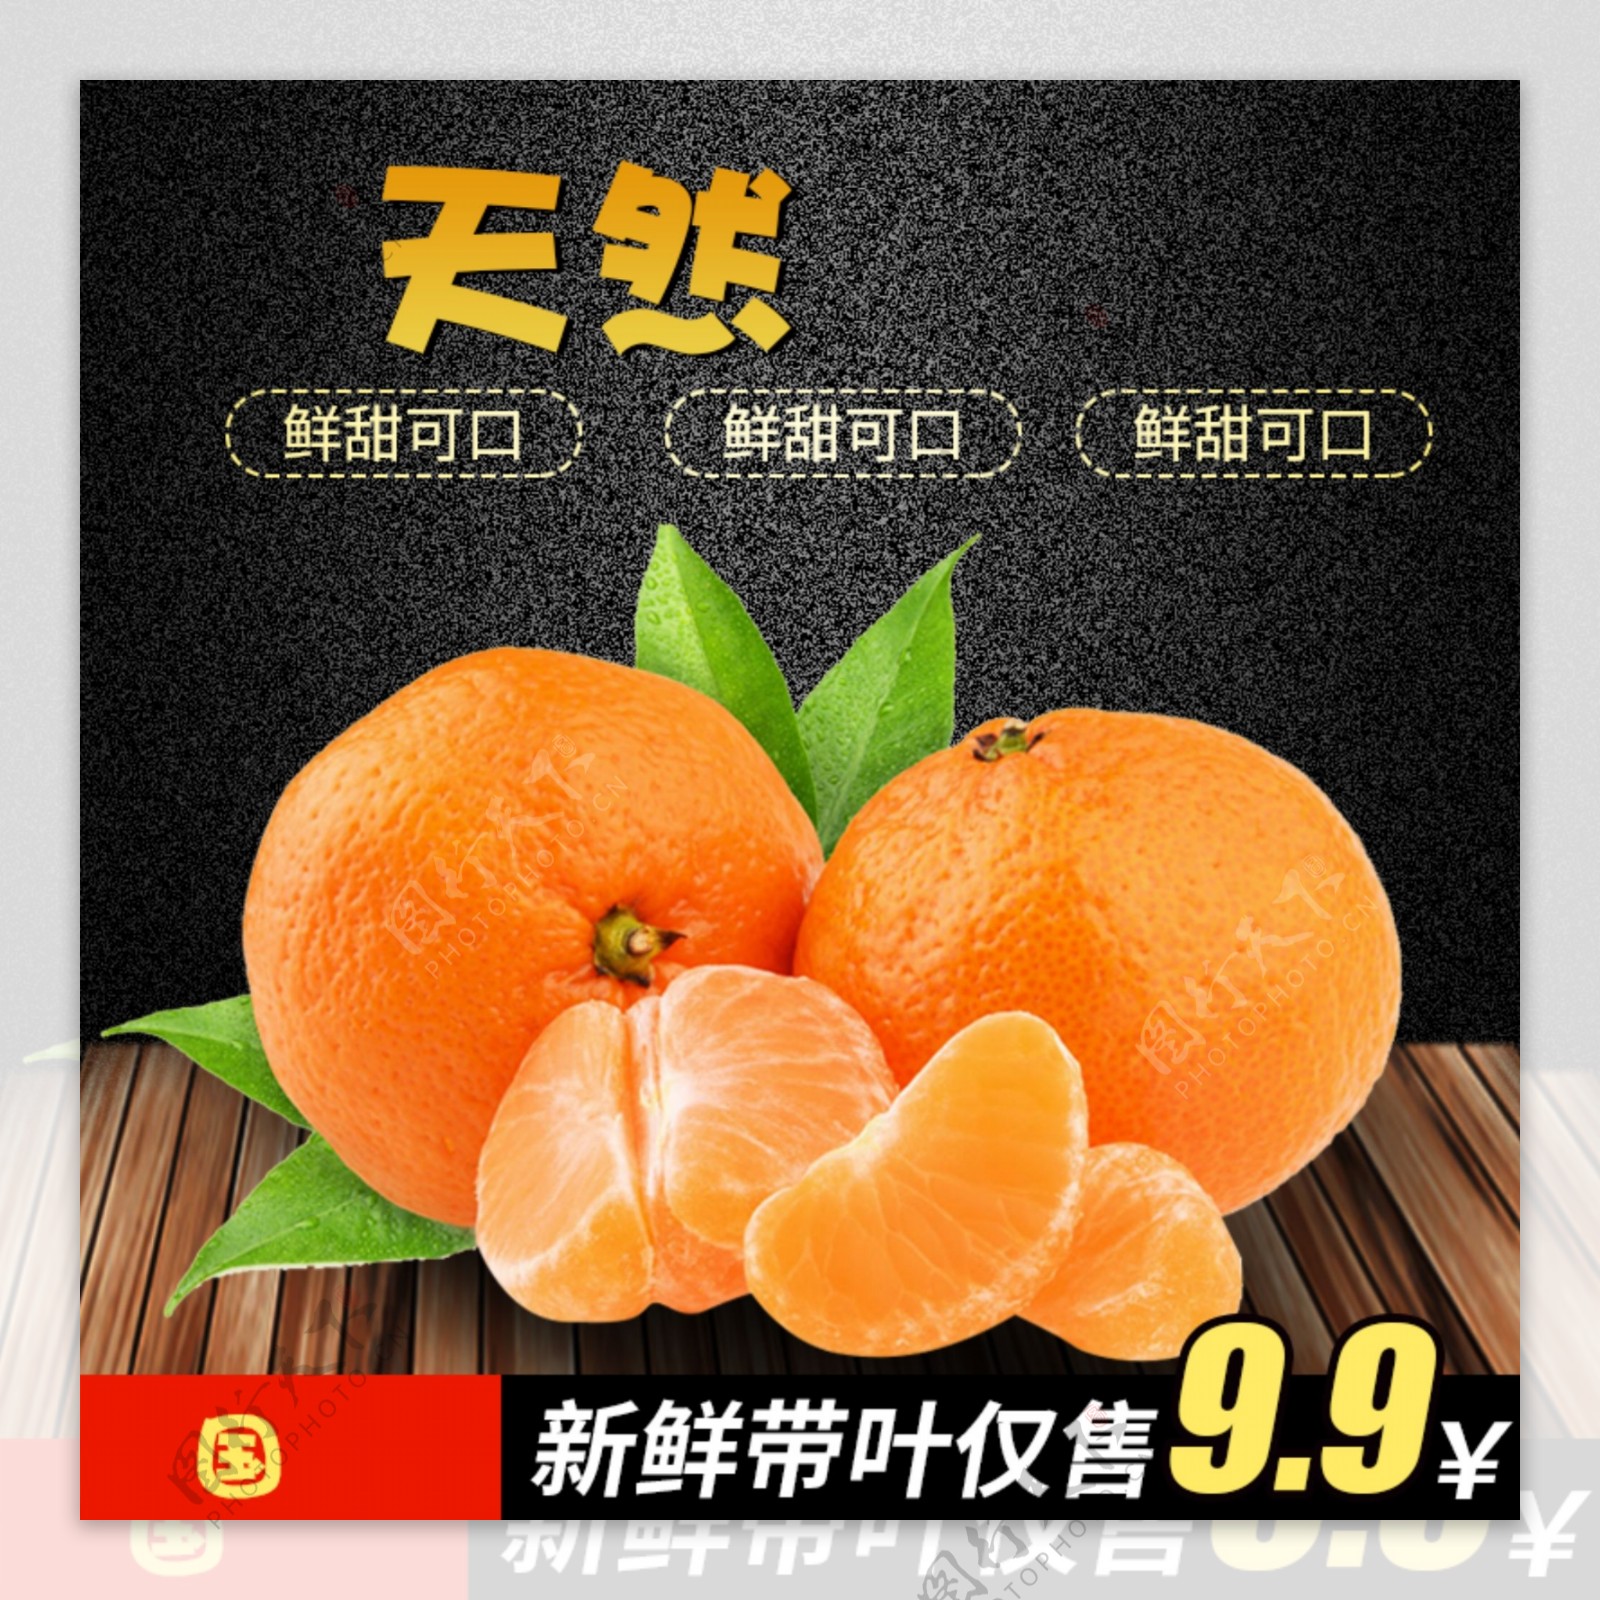 水果橘子橙子主图设计模板